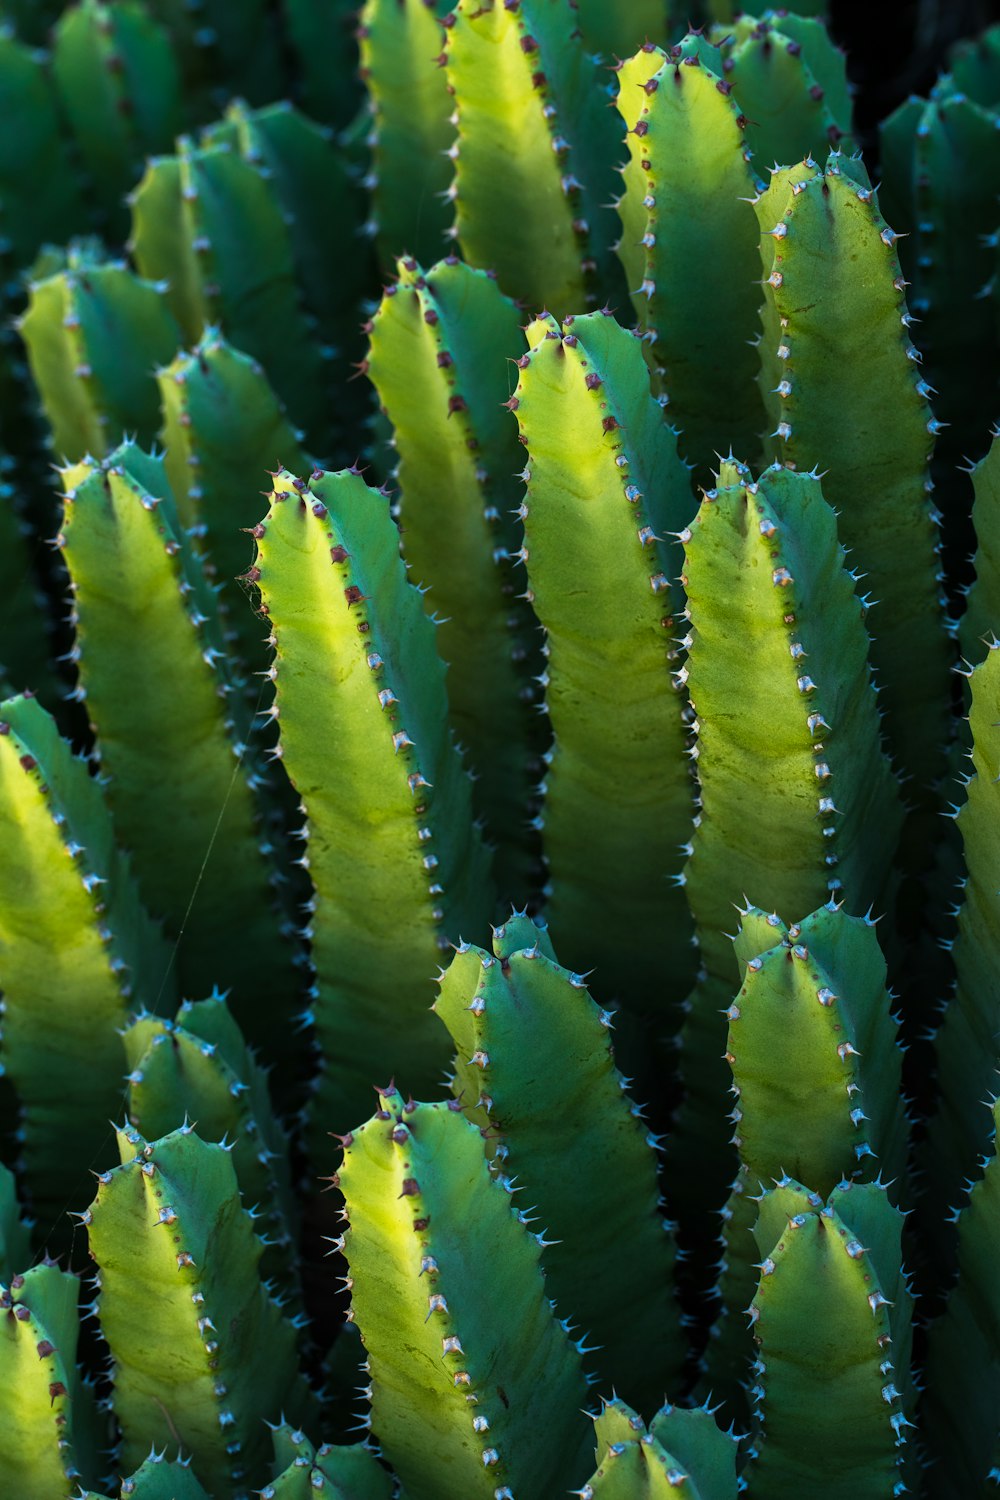 Foto de primer plano de cactus verde